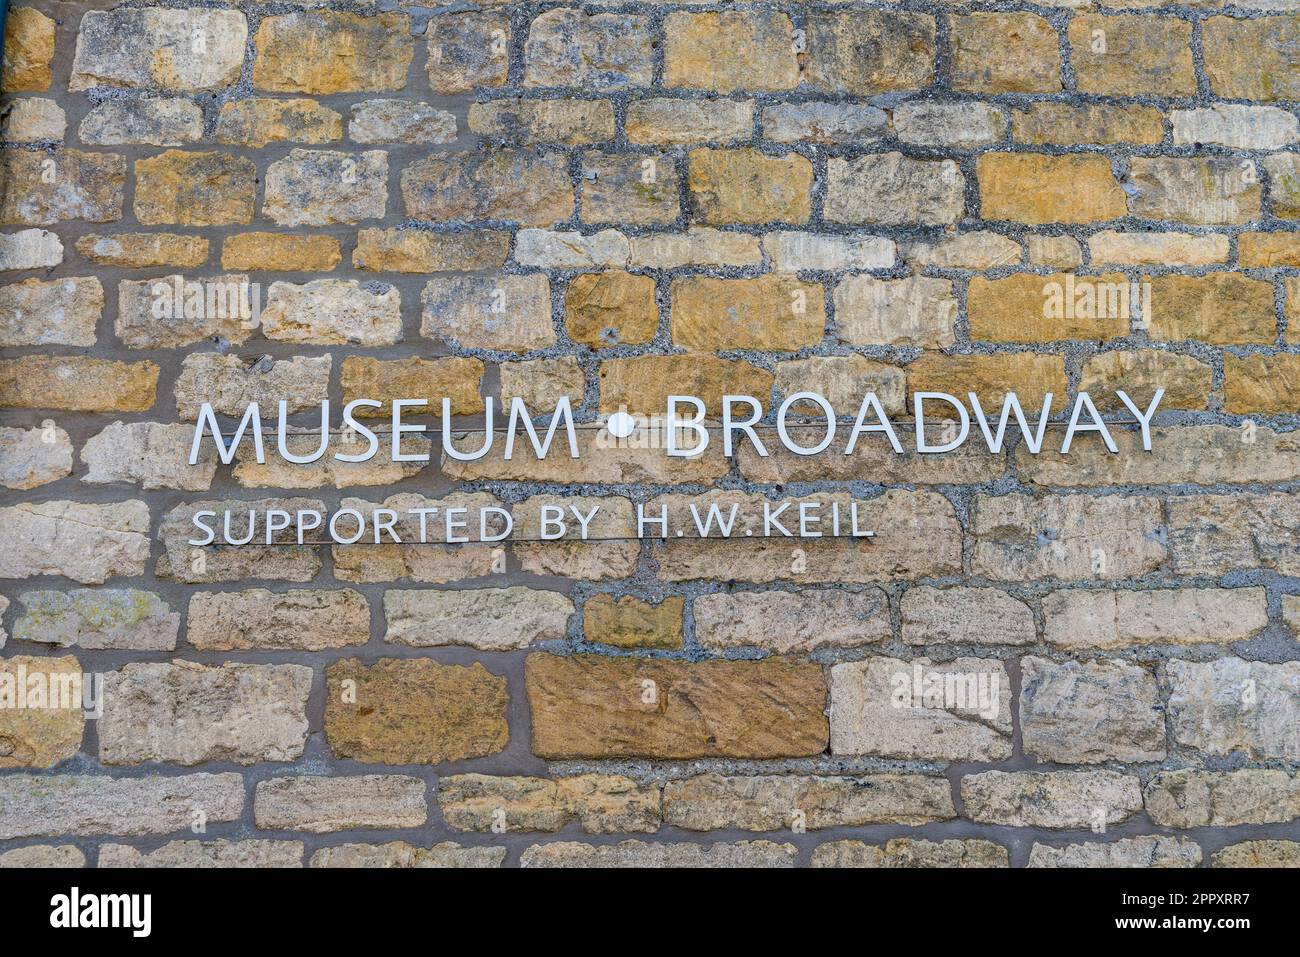 Musée et galerie d'art de Broadway dans le joli village de Cotswold à Broadway, Worcestershire, Angleterre, Royaume-Uni Banque D'Images